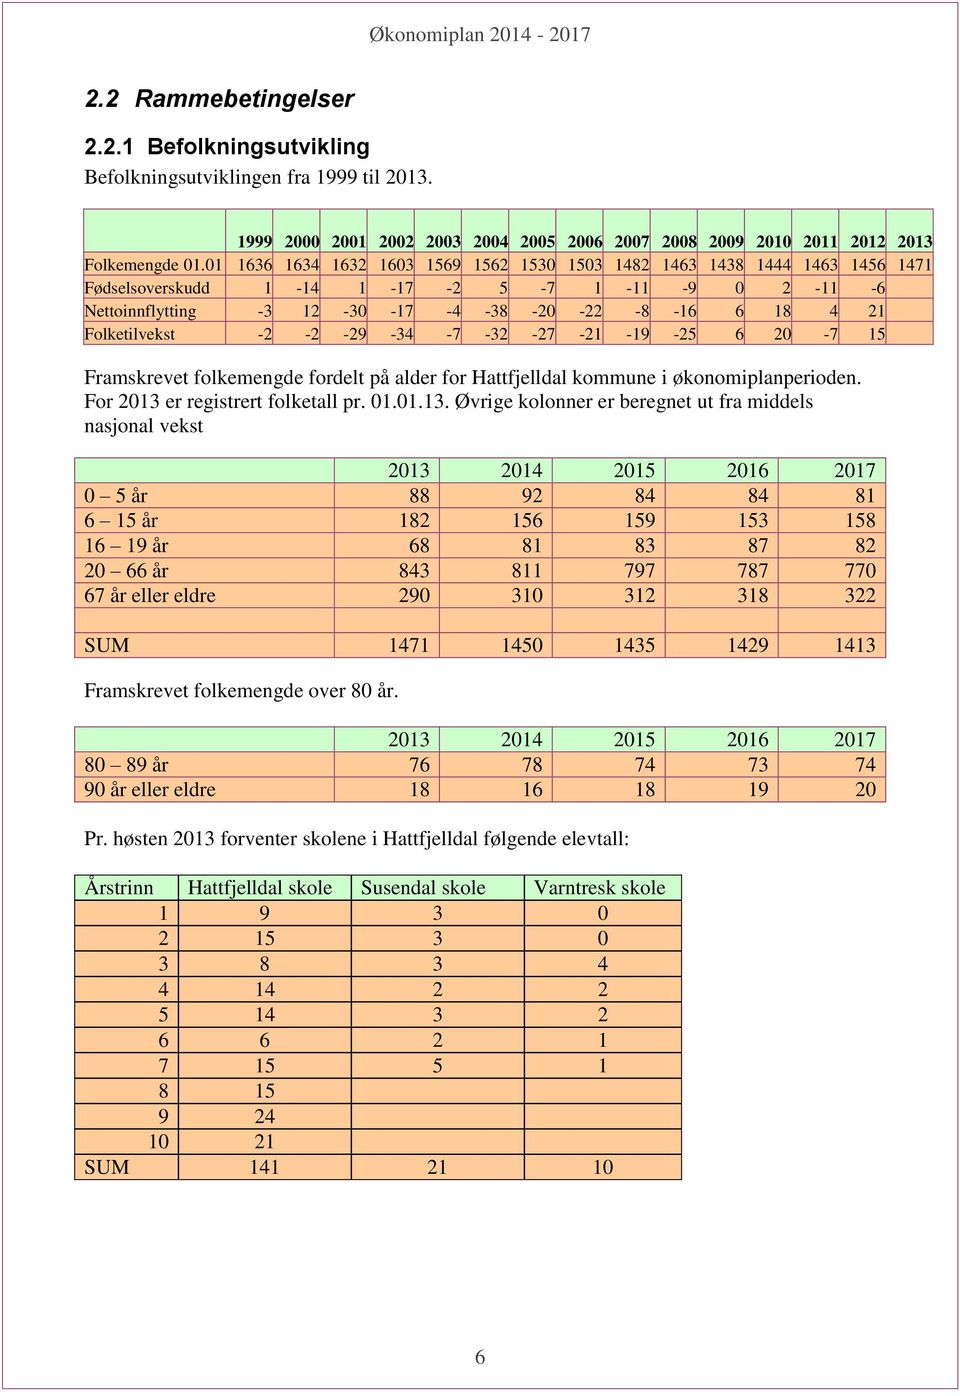 Folketilvekst -2-2 -29-34 -7-32 -27-21 -19-25 6 20-7 15 Framskrevet folkemengde fordelt på alder for Hattfjelldal kommune i økonomiplanperioden. For 2013 